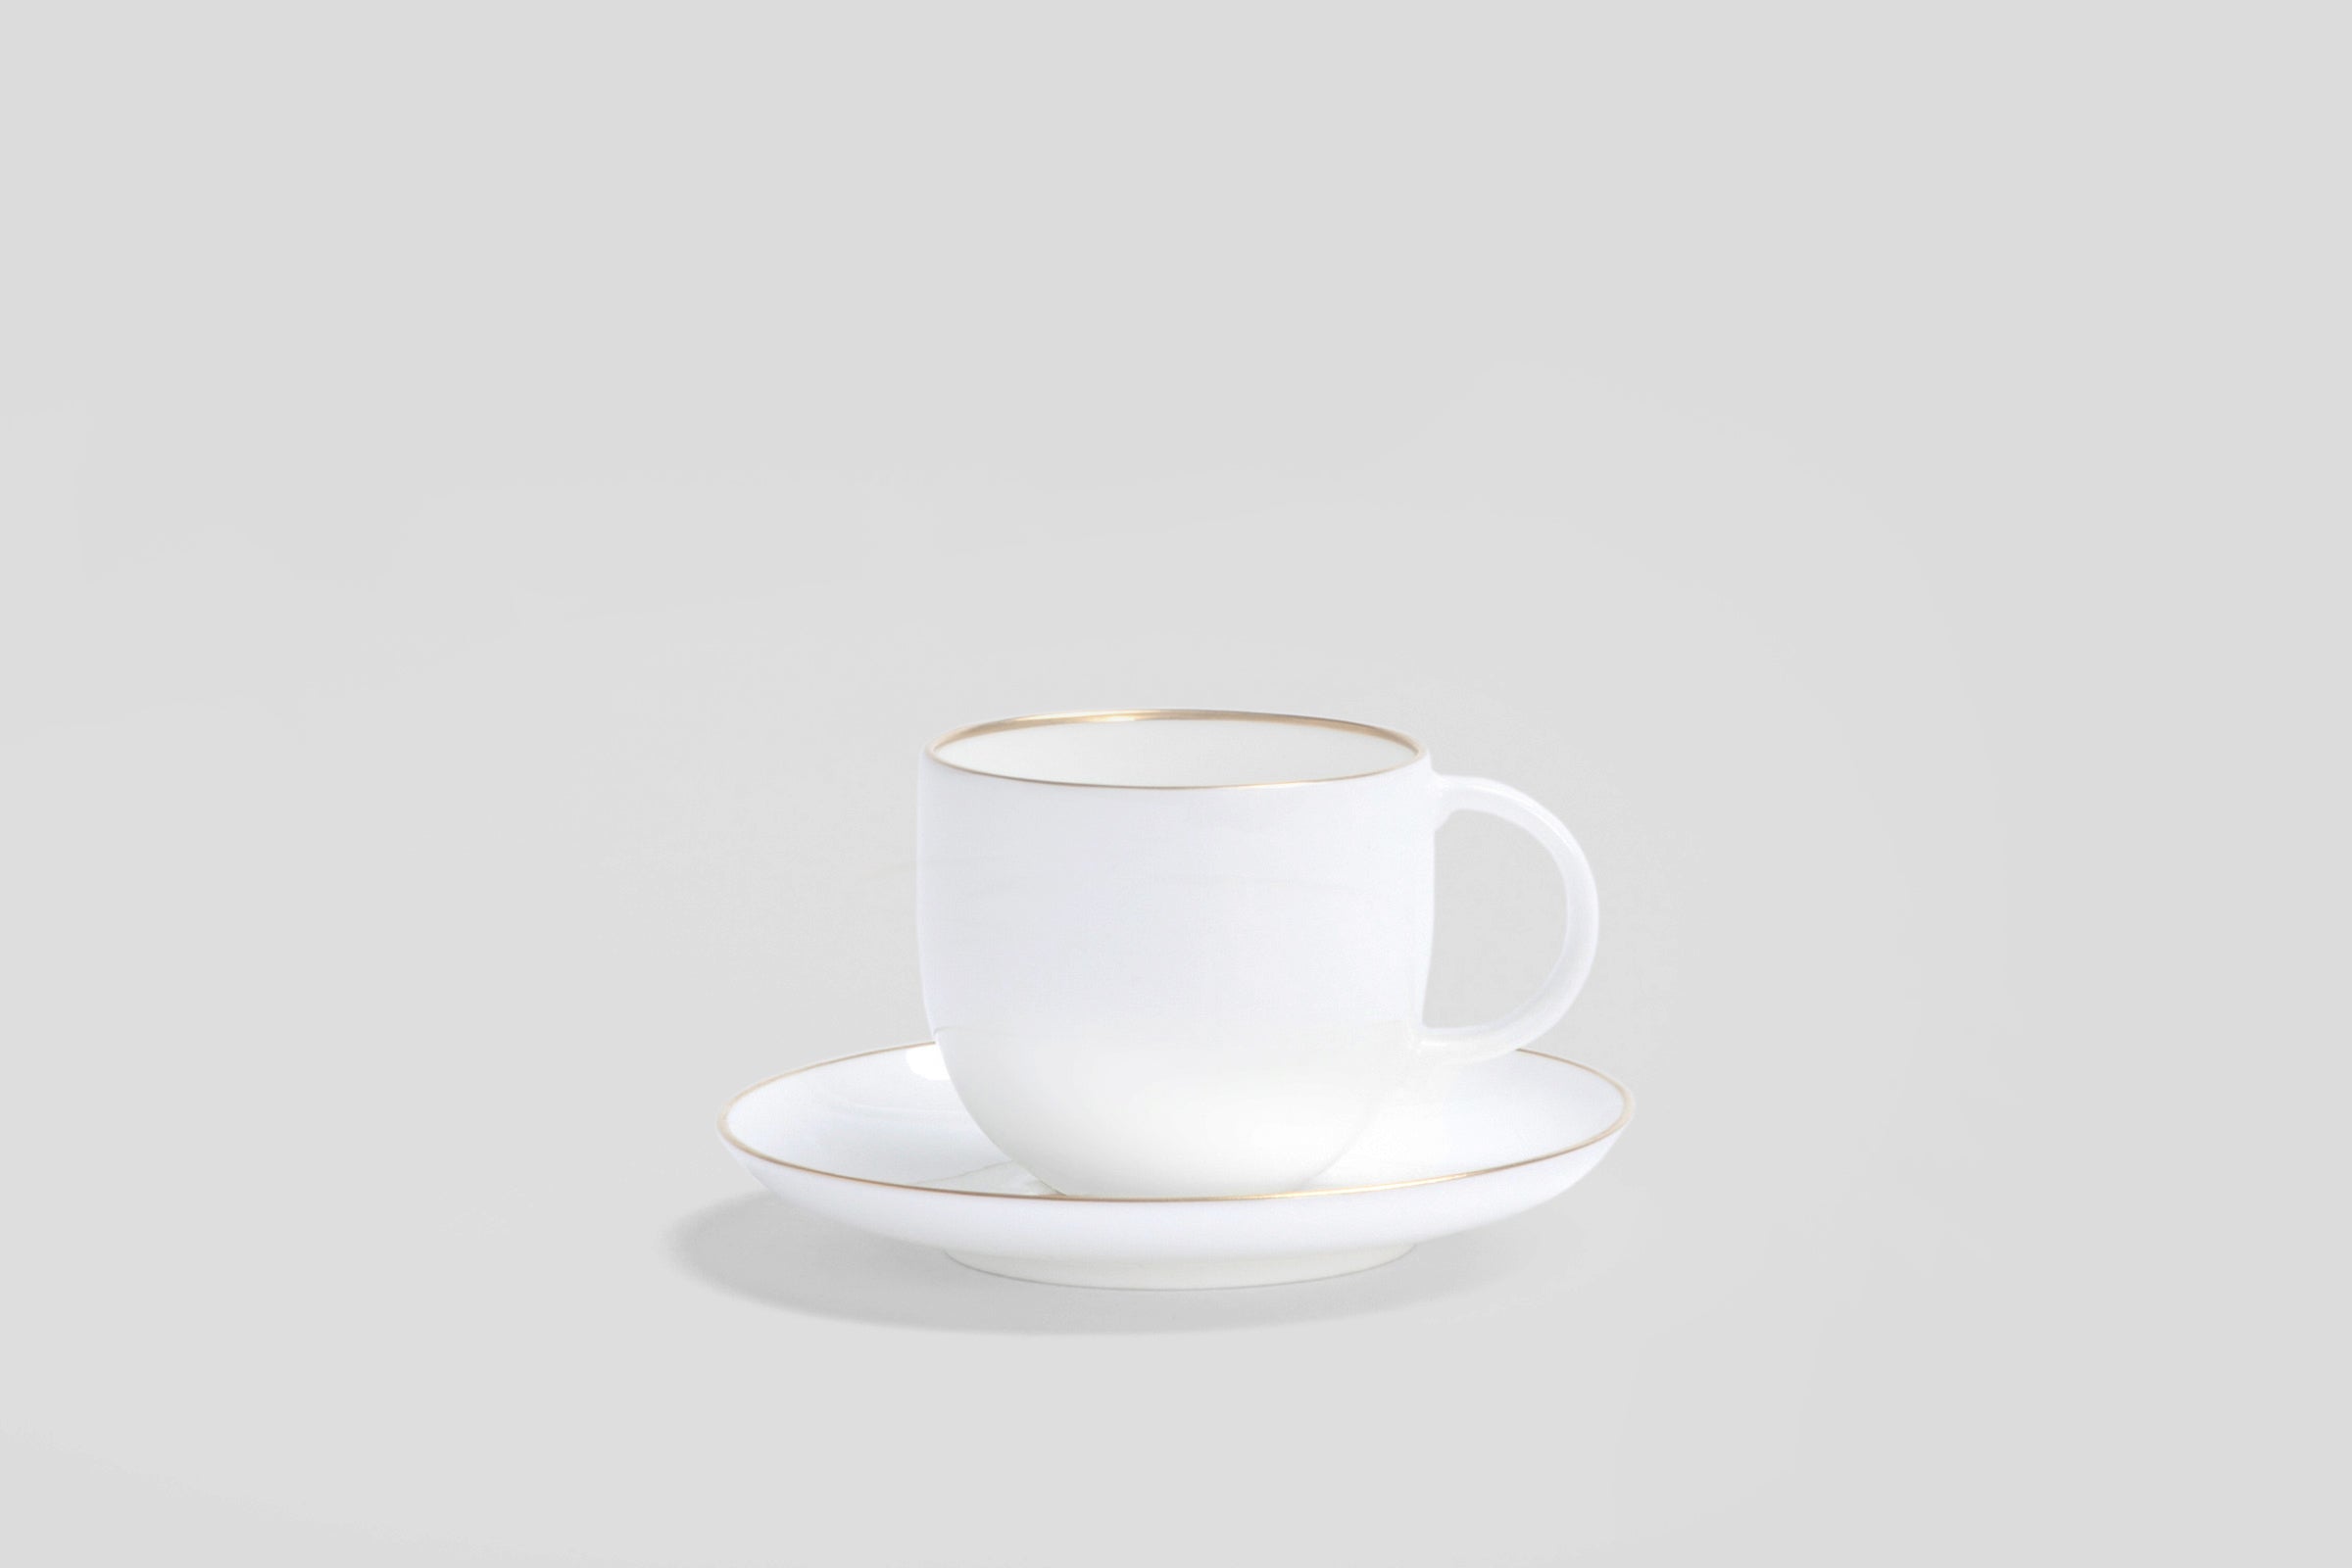 Designer-Luxury-Modern-Nikko Goldline Espresso Cup & Saucer-Nikko-Goldline-Gold-Bodo Sperlein-Bone China-Designer-Luxury-Modern-Tasse-Becher-Kaffee Tasse